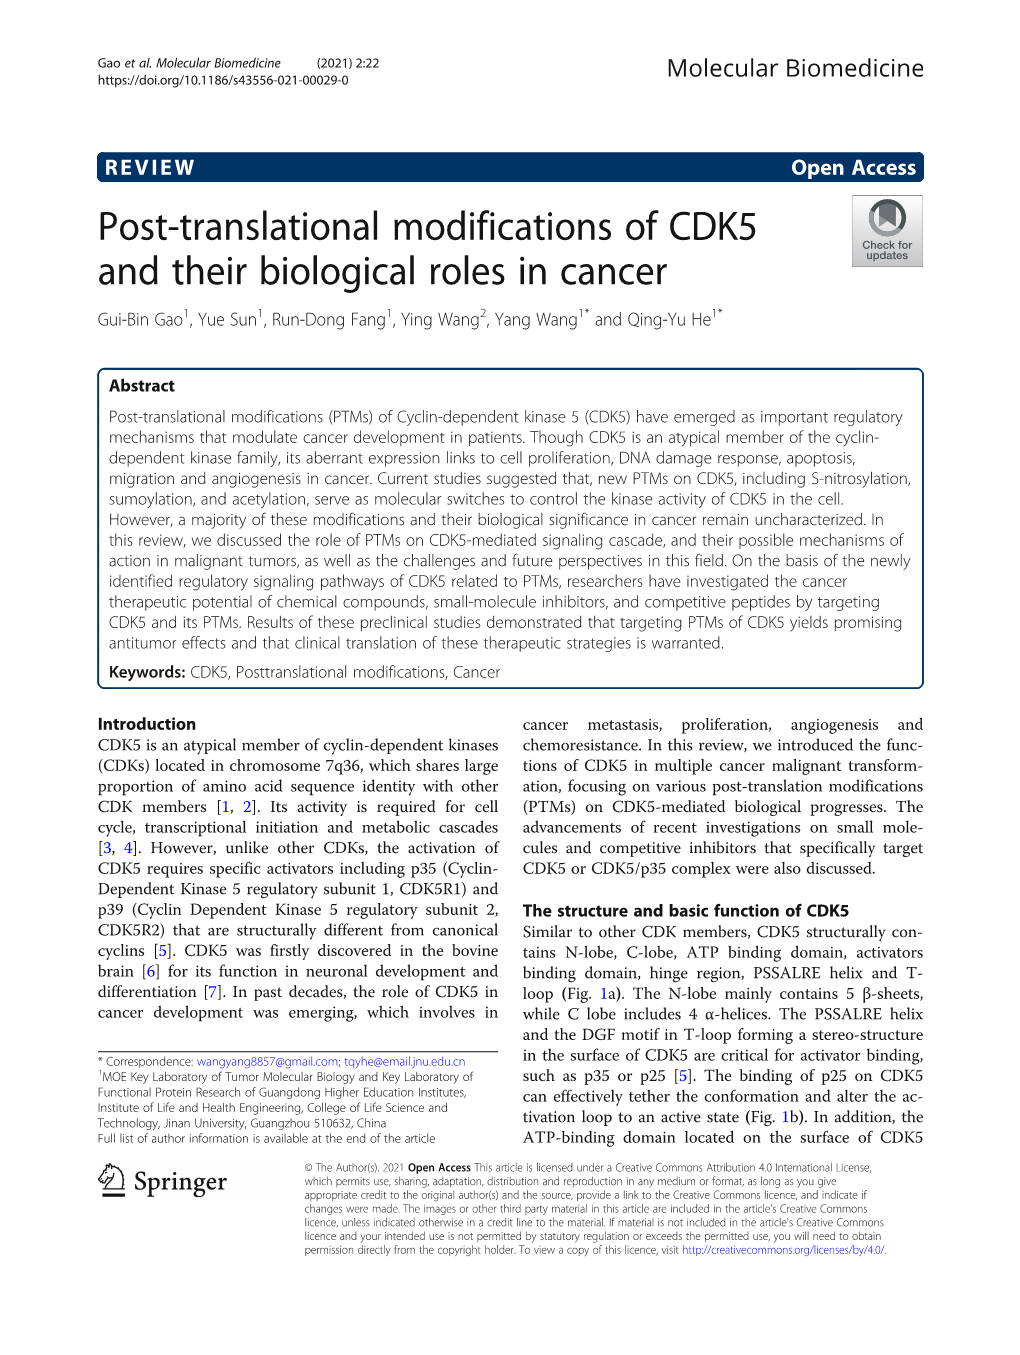 Post-Translational Modifications of CDK5 and Their Biological Roles in Cancer Gui-Bin Gao1, Yue Sun1, Run-Dong Fang1, Ying Wang2, Yang Wang1* and Qing-Yu He1*